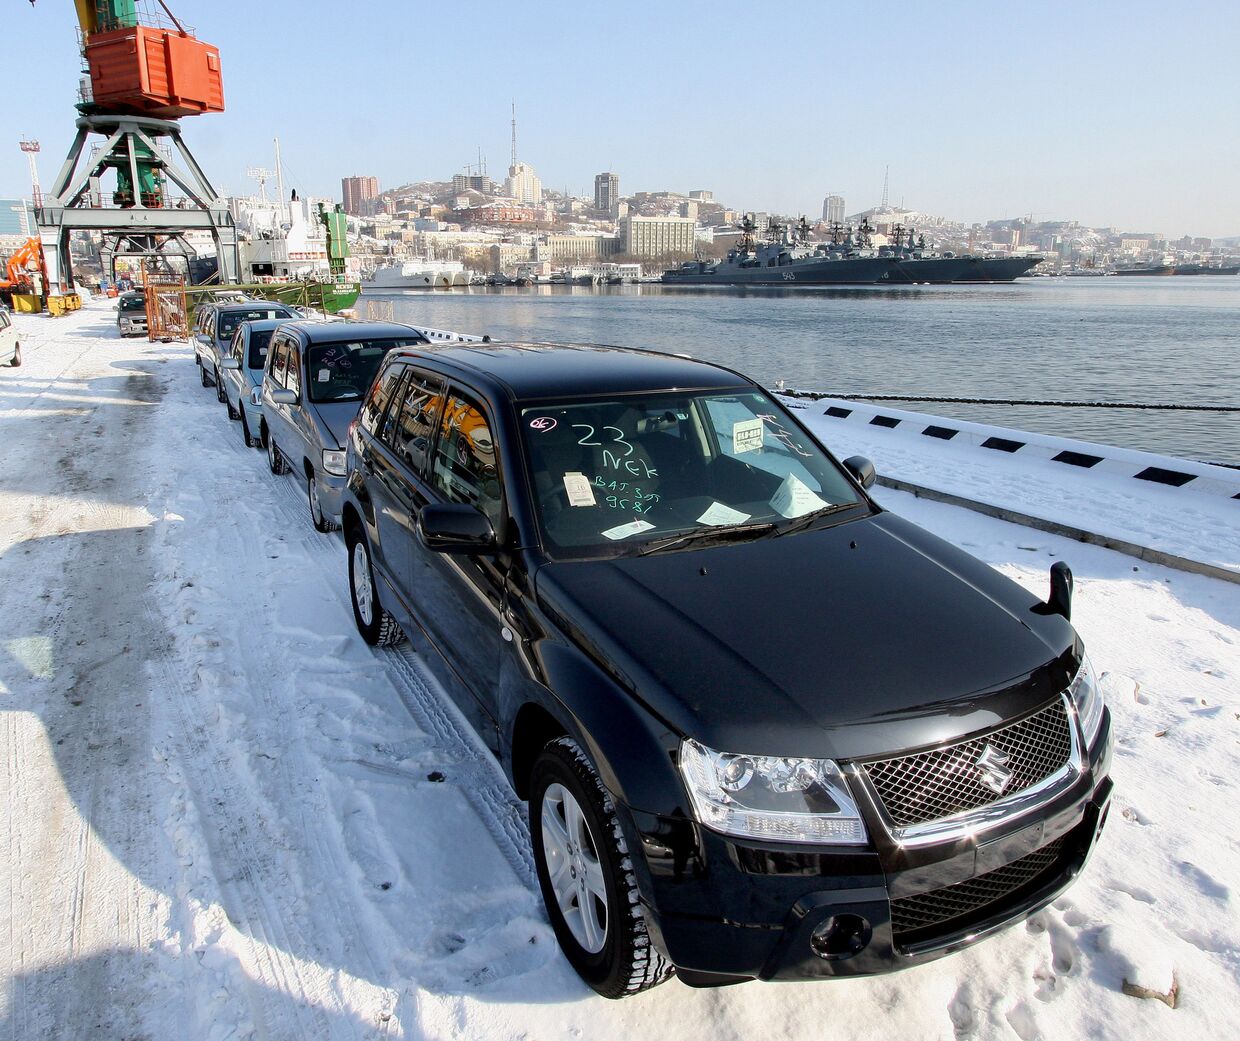 Автомобили, прибывшие на одном из судов из Японии, во Владивостокском порту